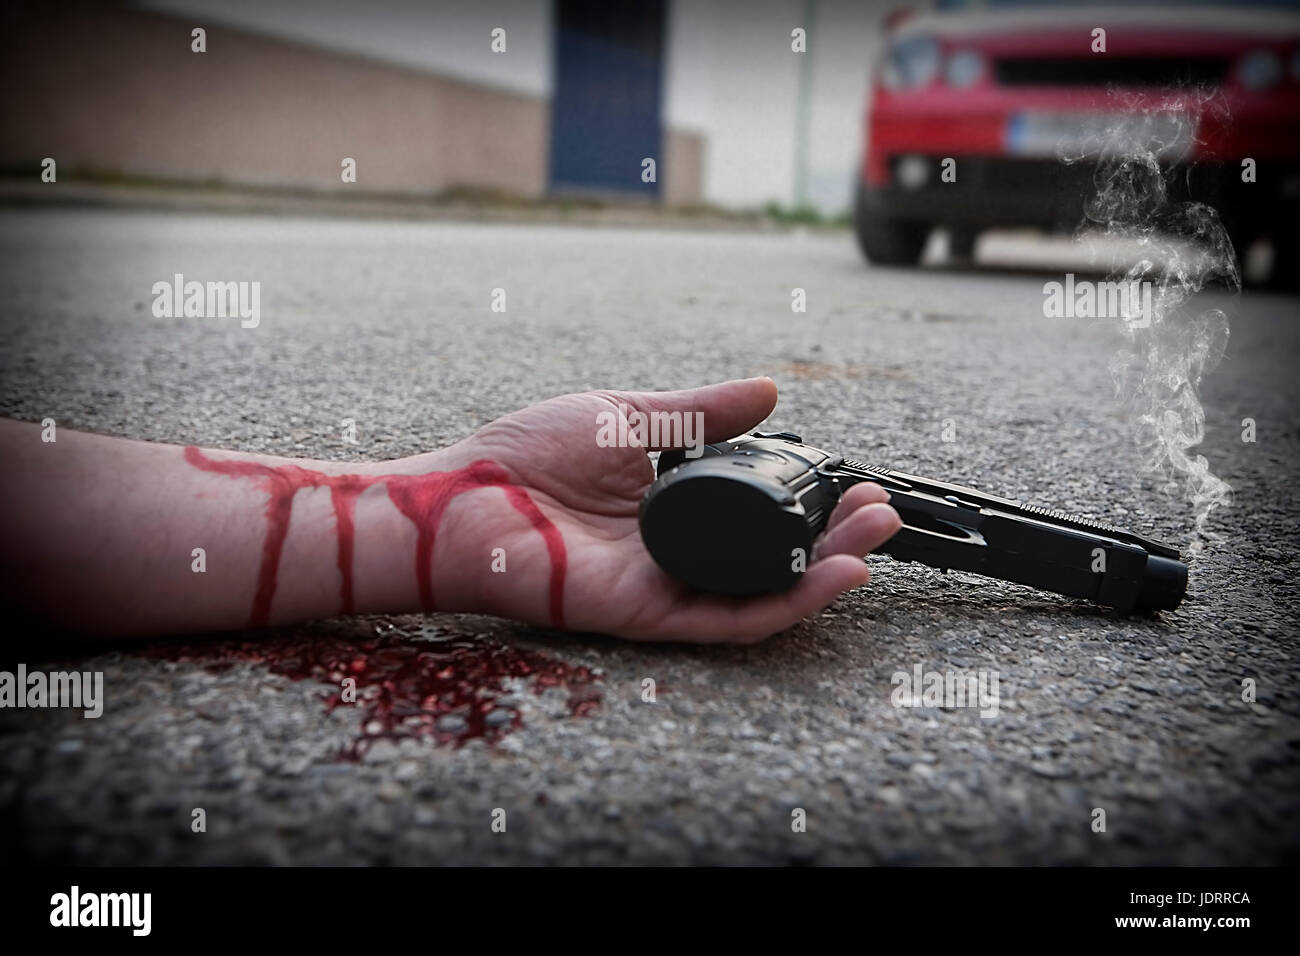 El hombre con la pistola en la mano ensangrentada yace muerto en el asfalto de la víctima de asesinato Foto de stock